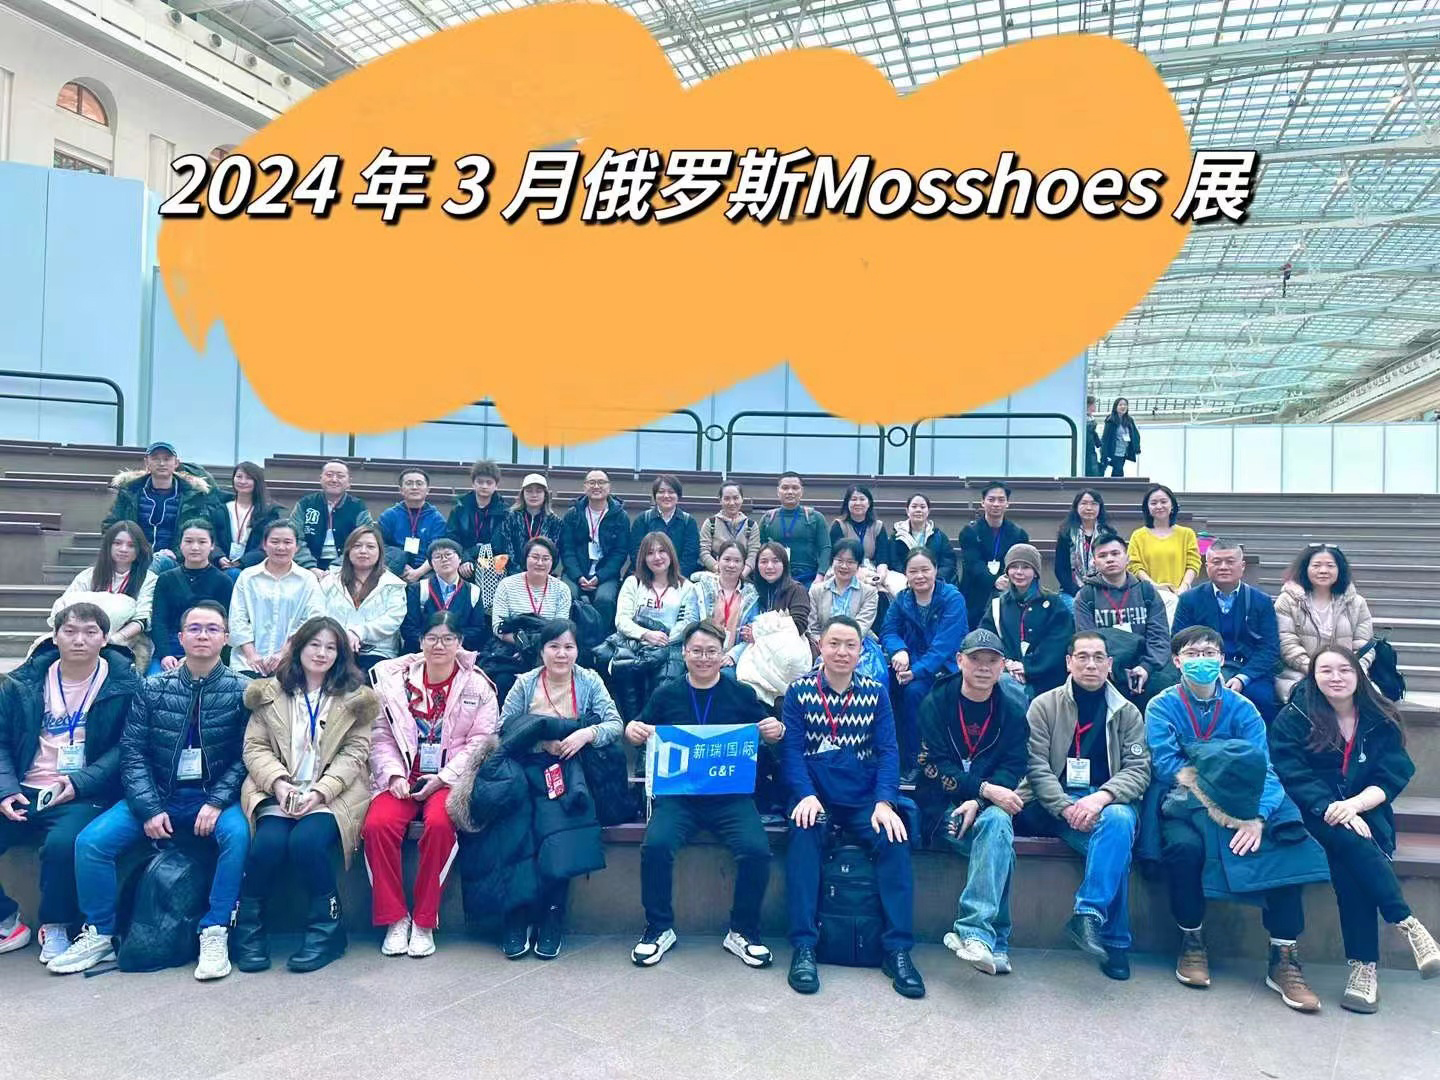 سيكون معرض MOSSSHOES الروسي حدثًا رائدًا ويتطلع المنظمون إلى تلقي الطلبات الكاملة من المشاركين المتحمسين.